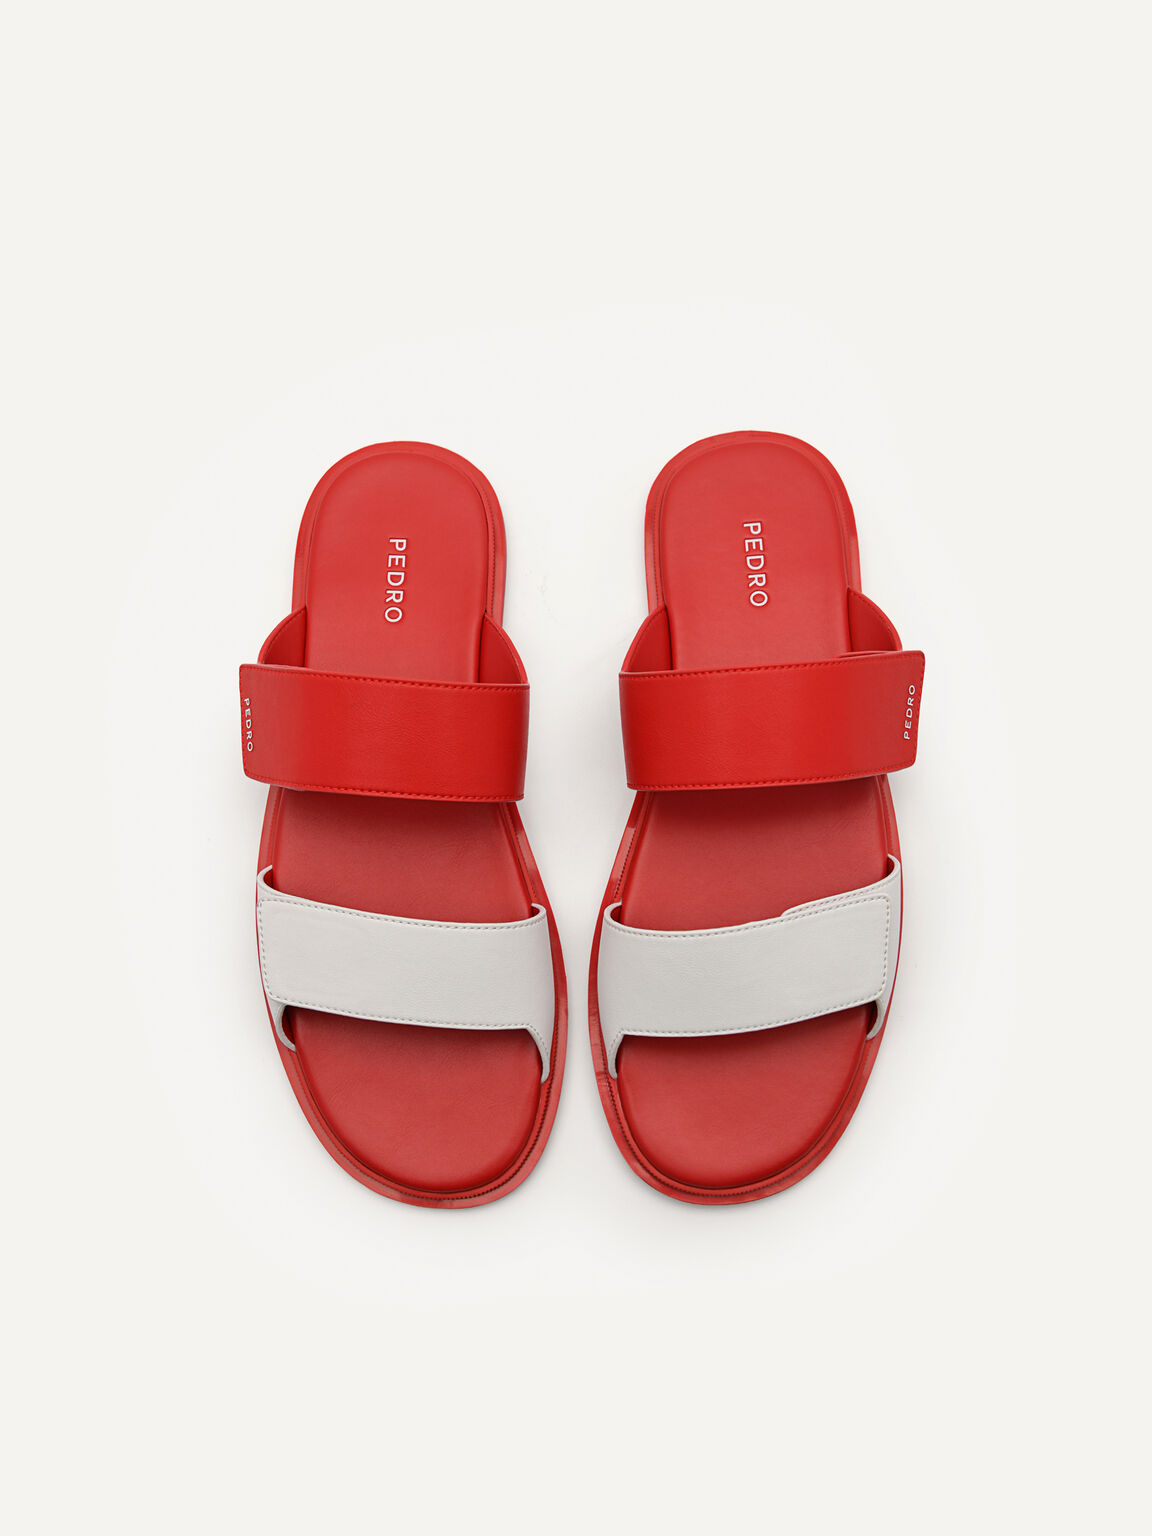 Stride Slide Sandals, Red, hi-res